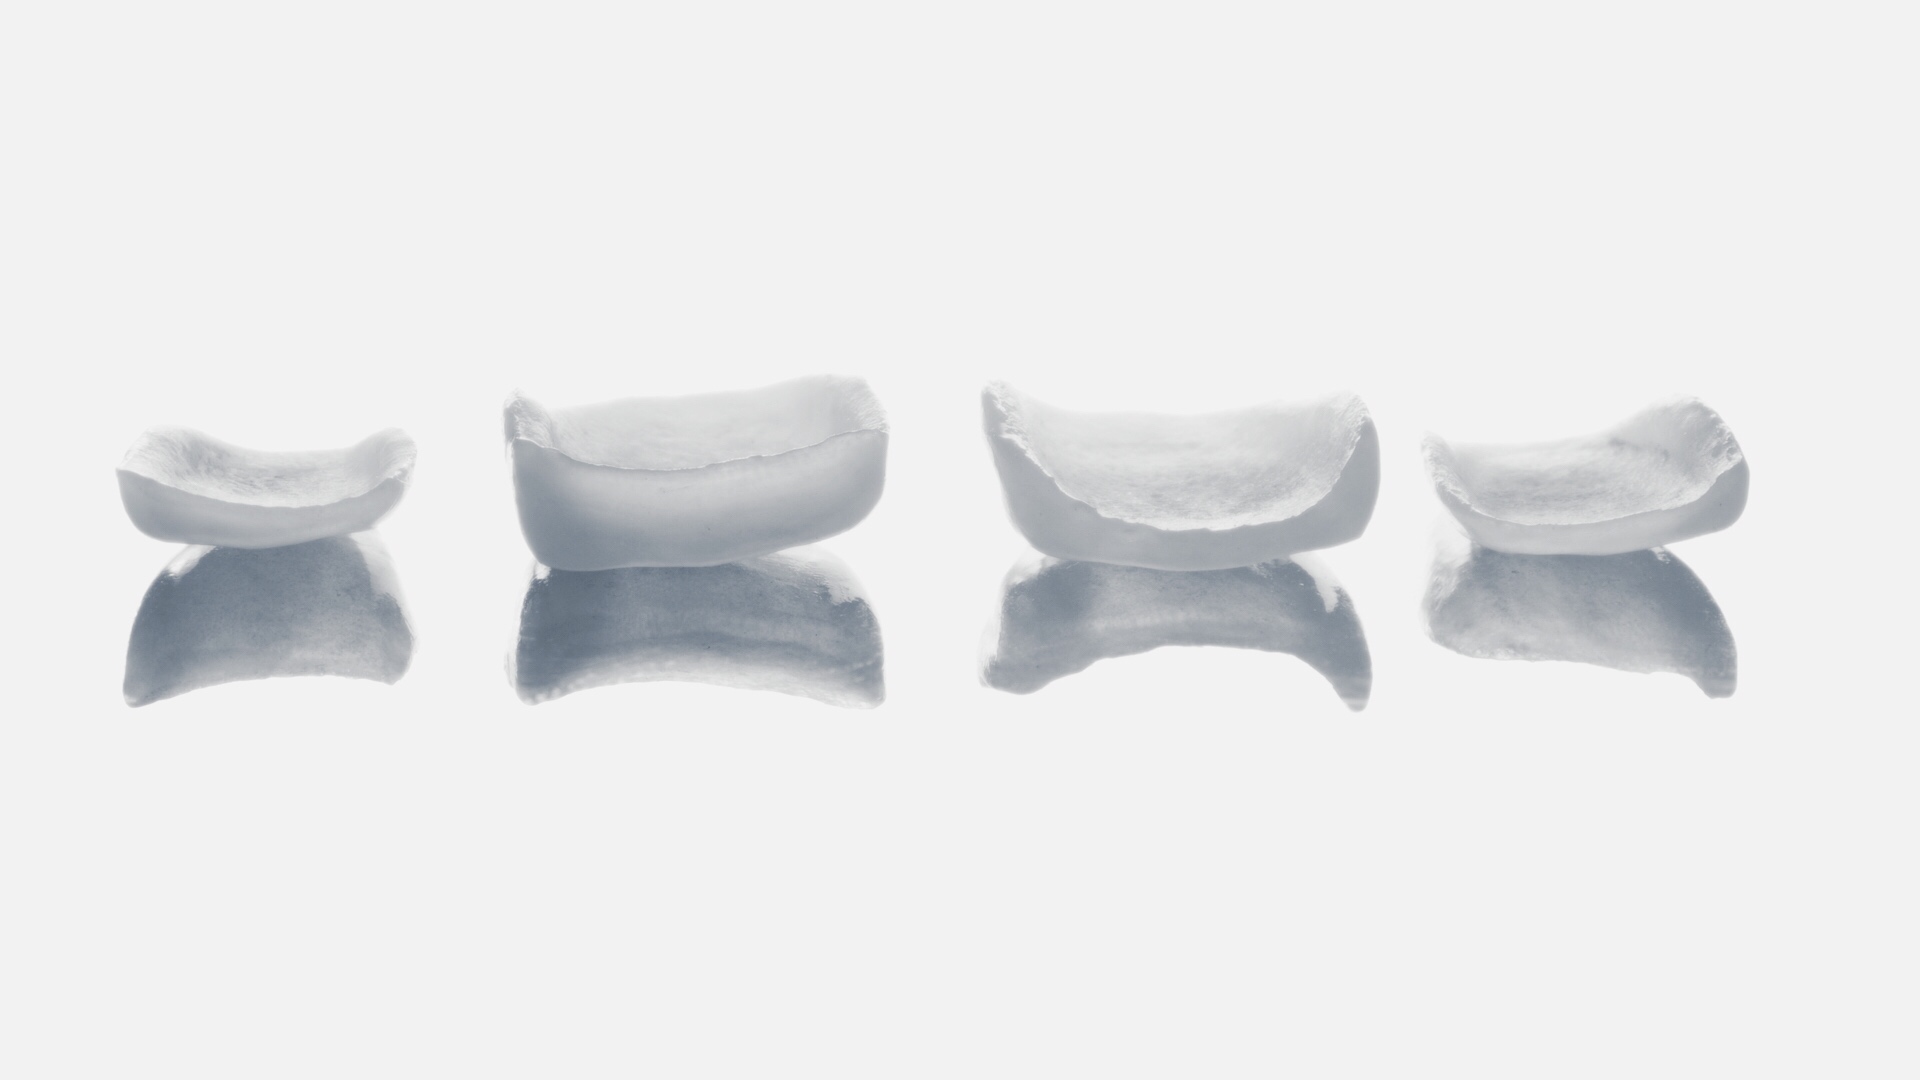 What are dental veneers?